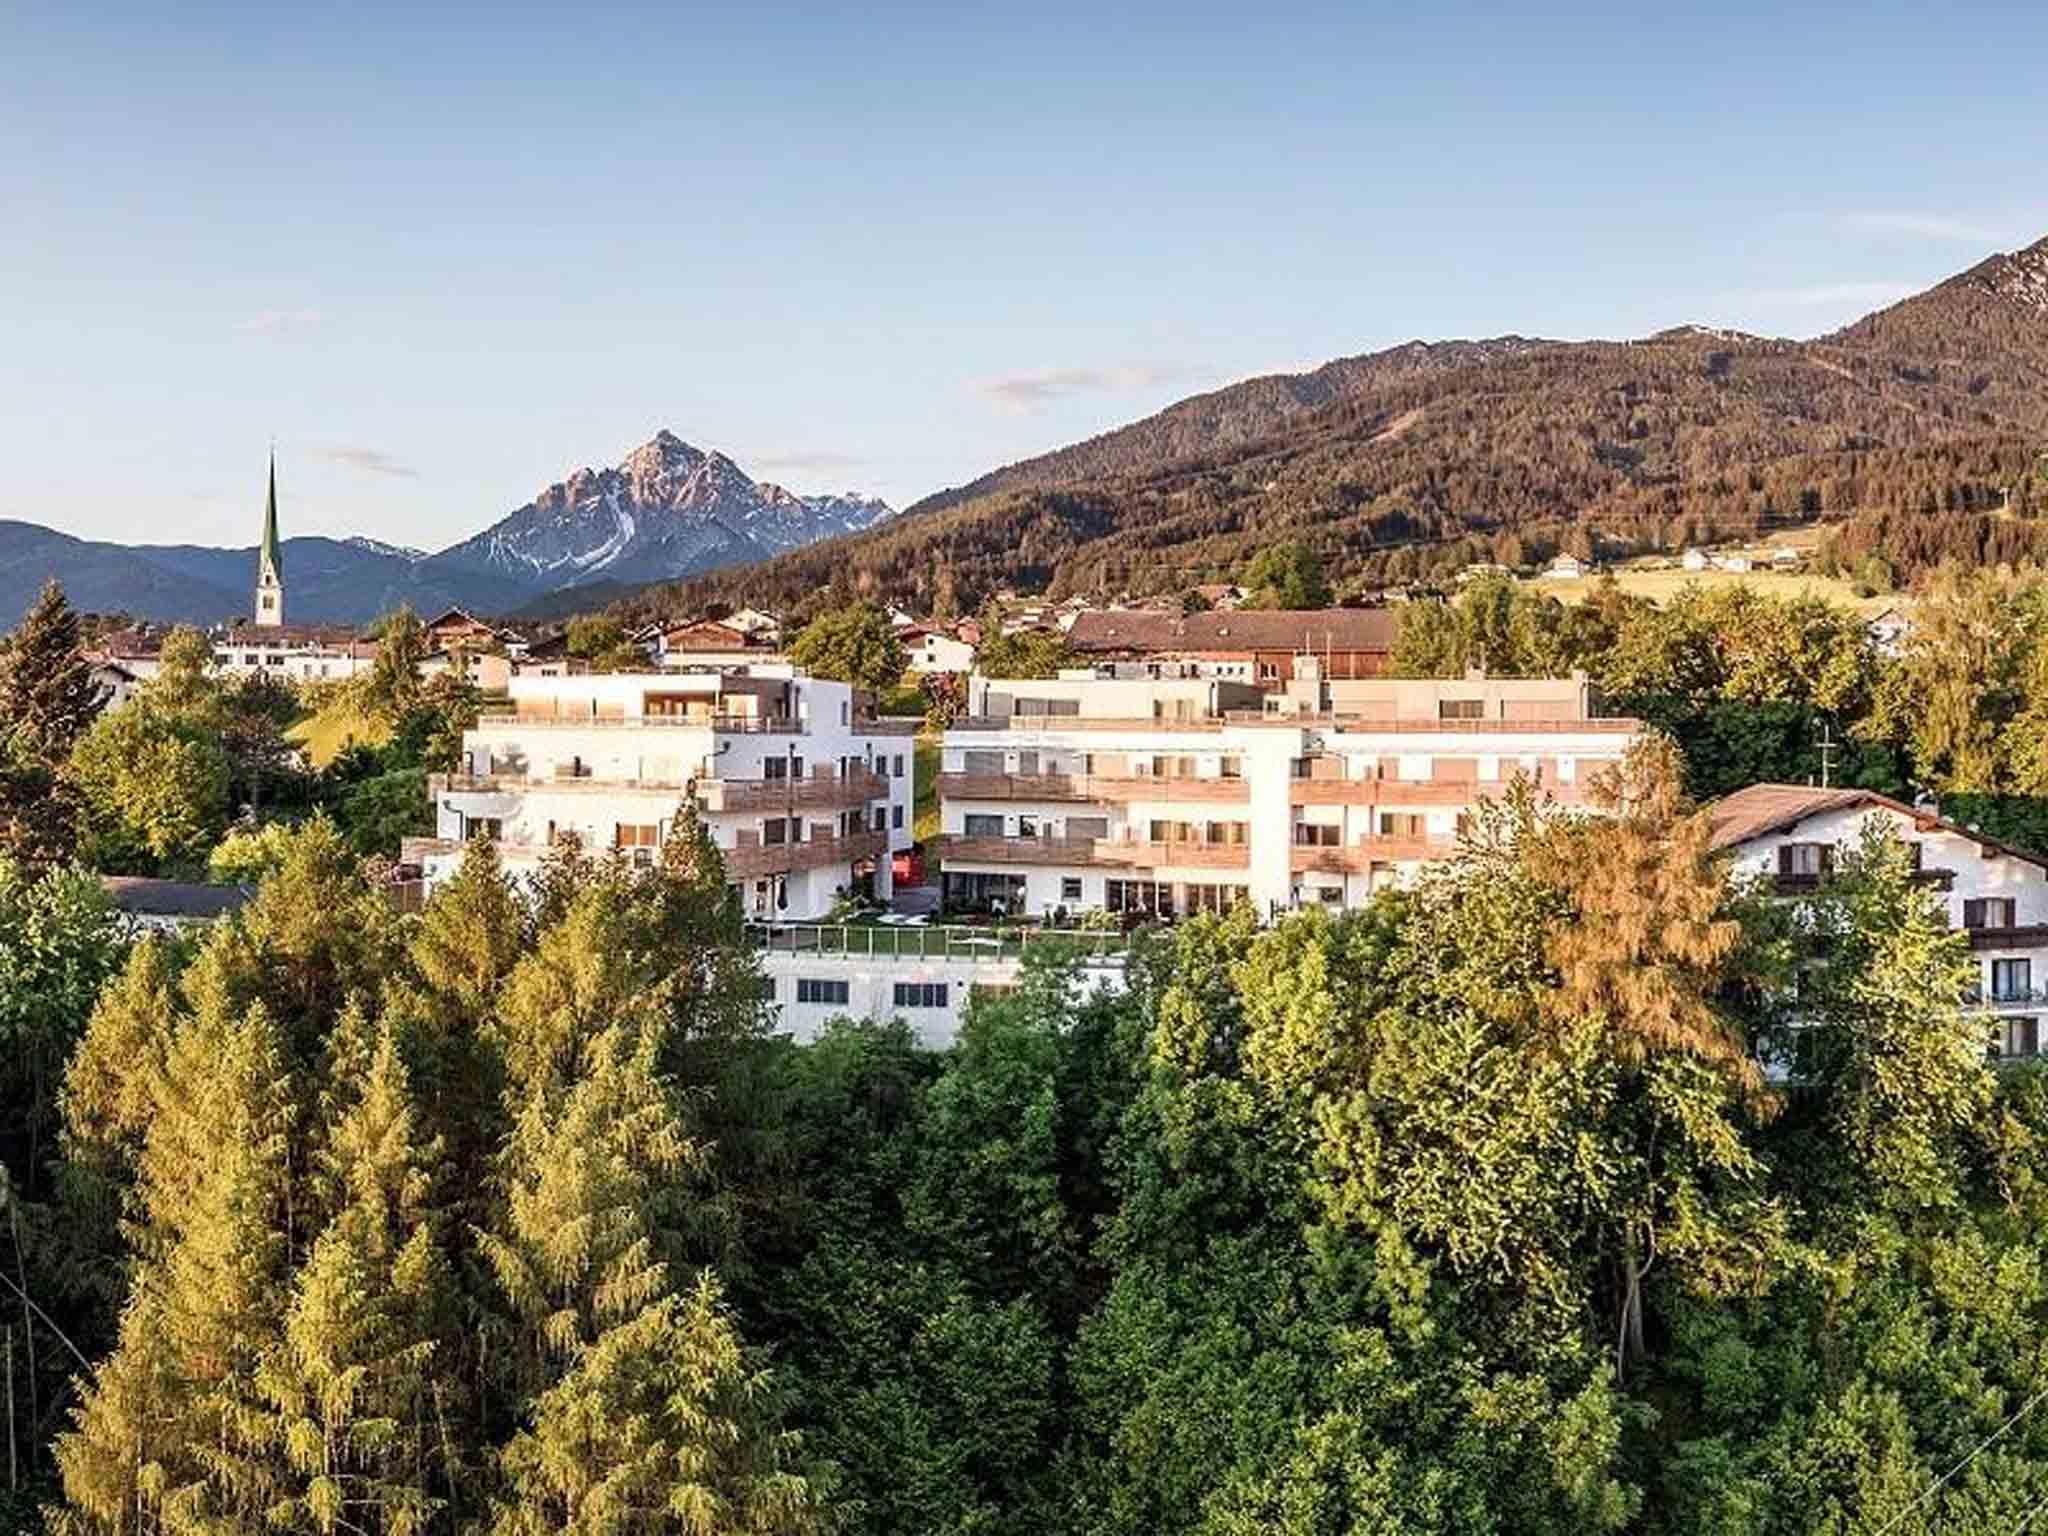 Hotel dasMEI, Innsbruck – Updated 2023 Prices